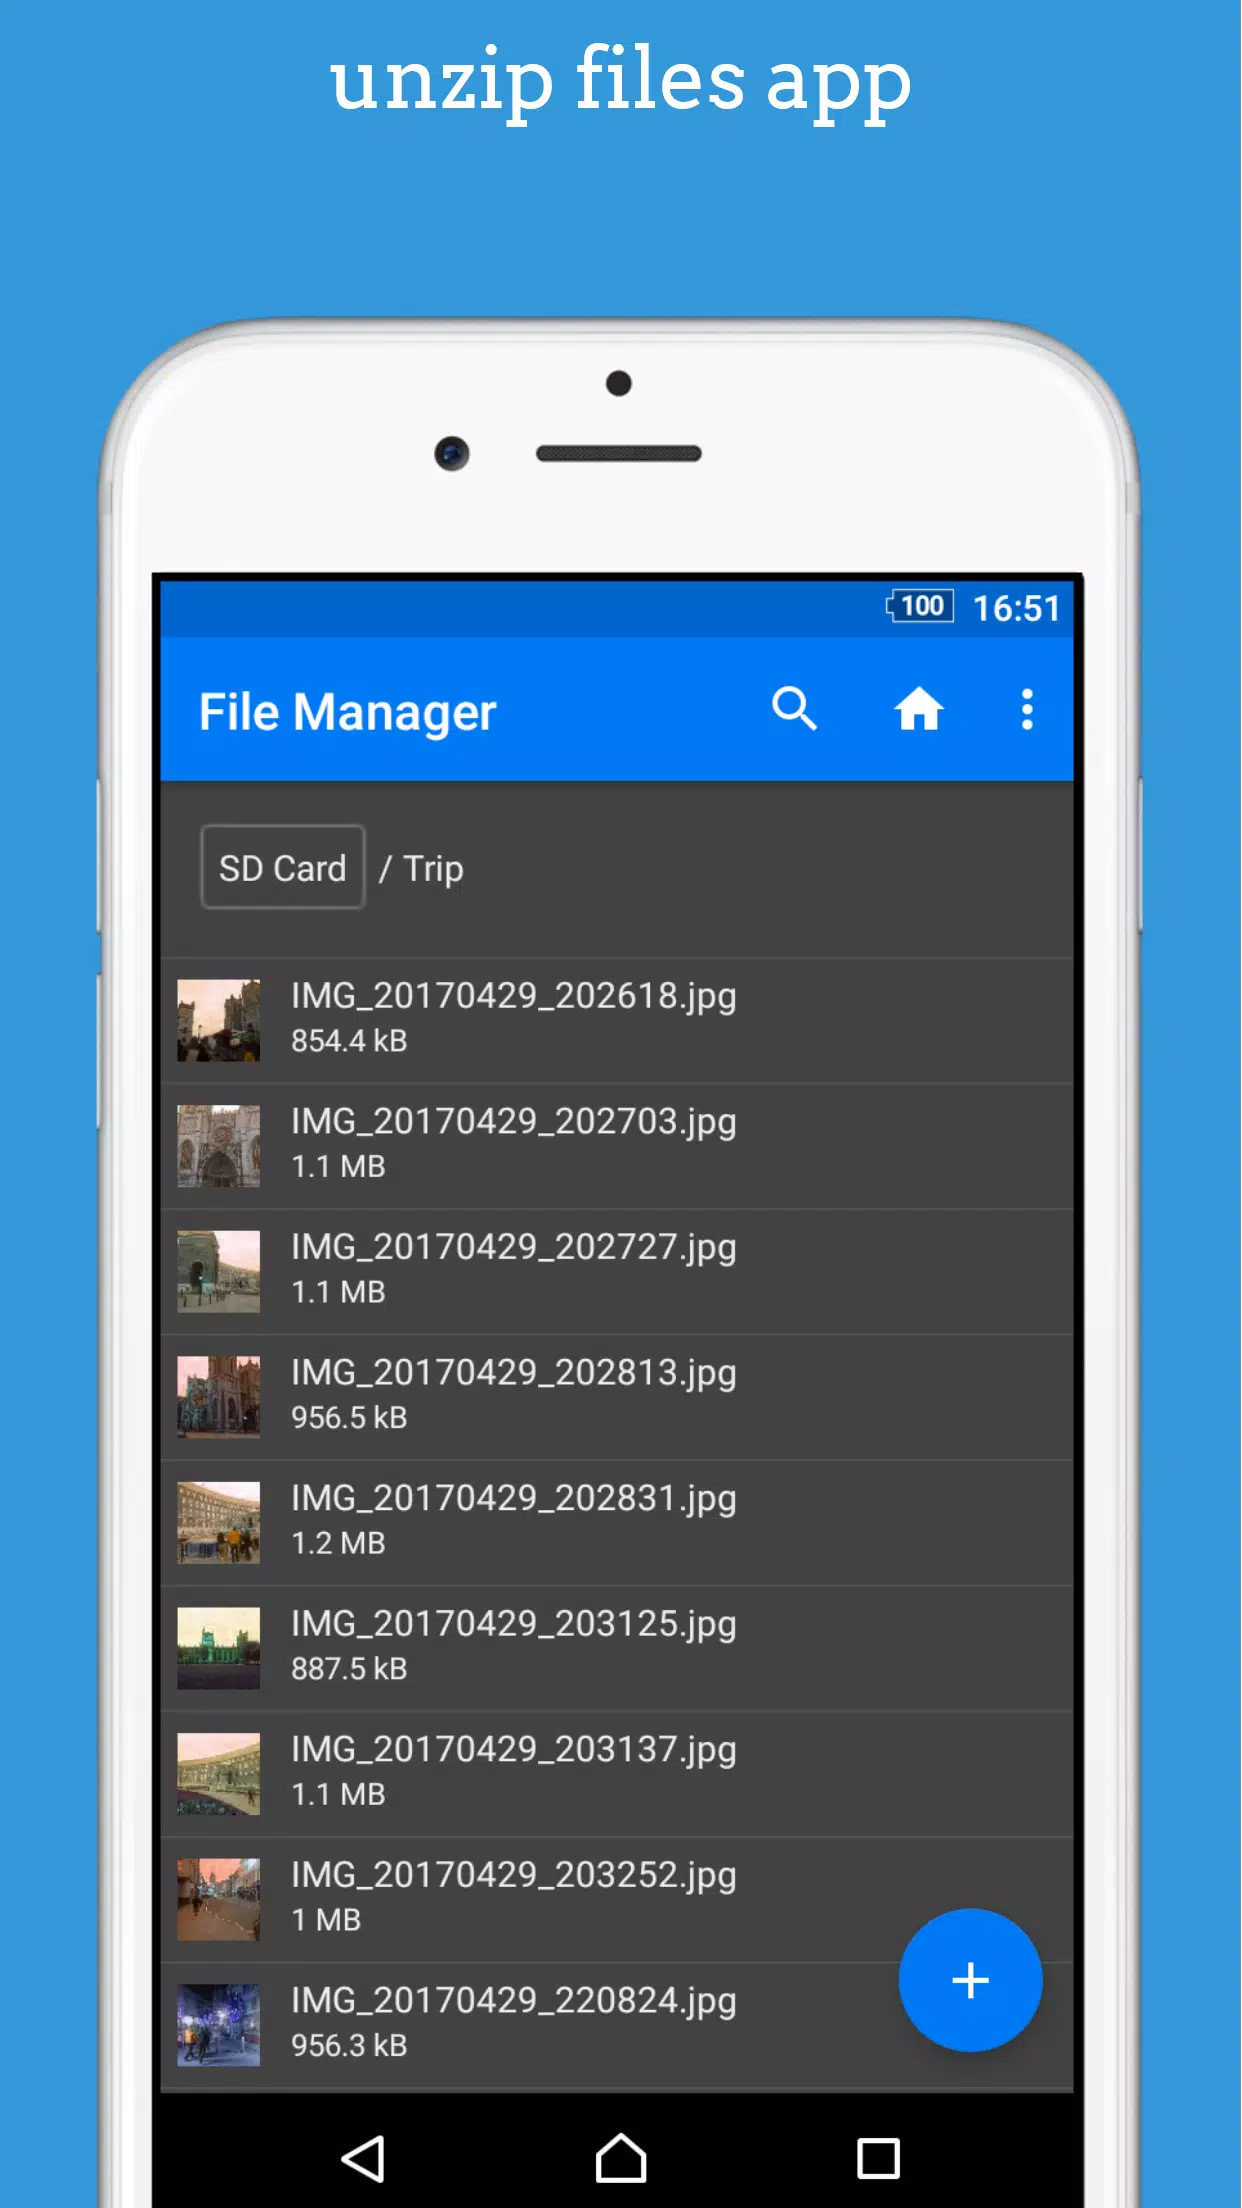 dezipper fichier:unzip android gratuit zip opener APK pour Android  Télécharger